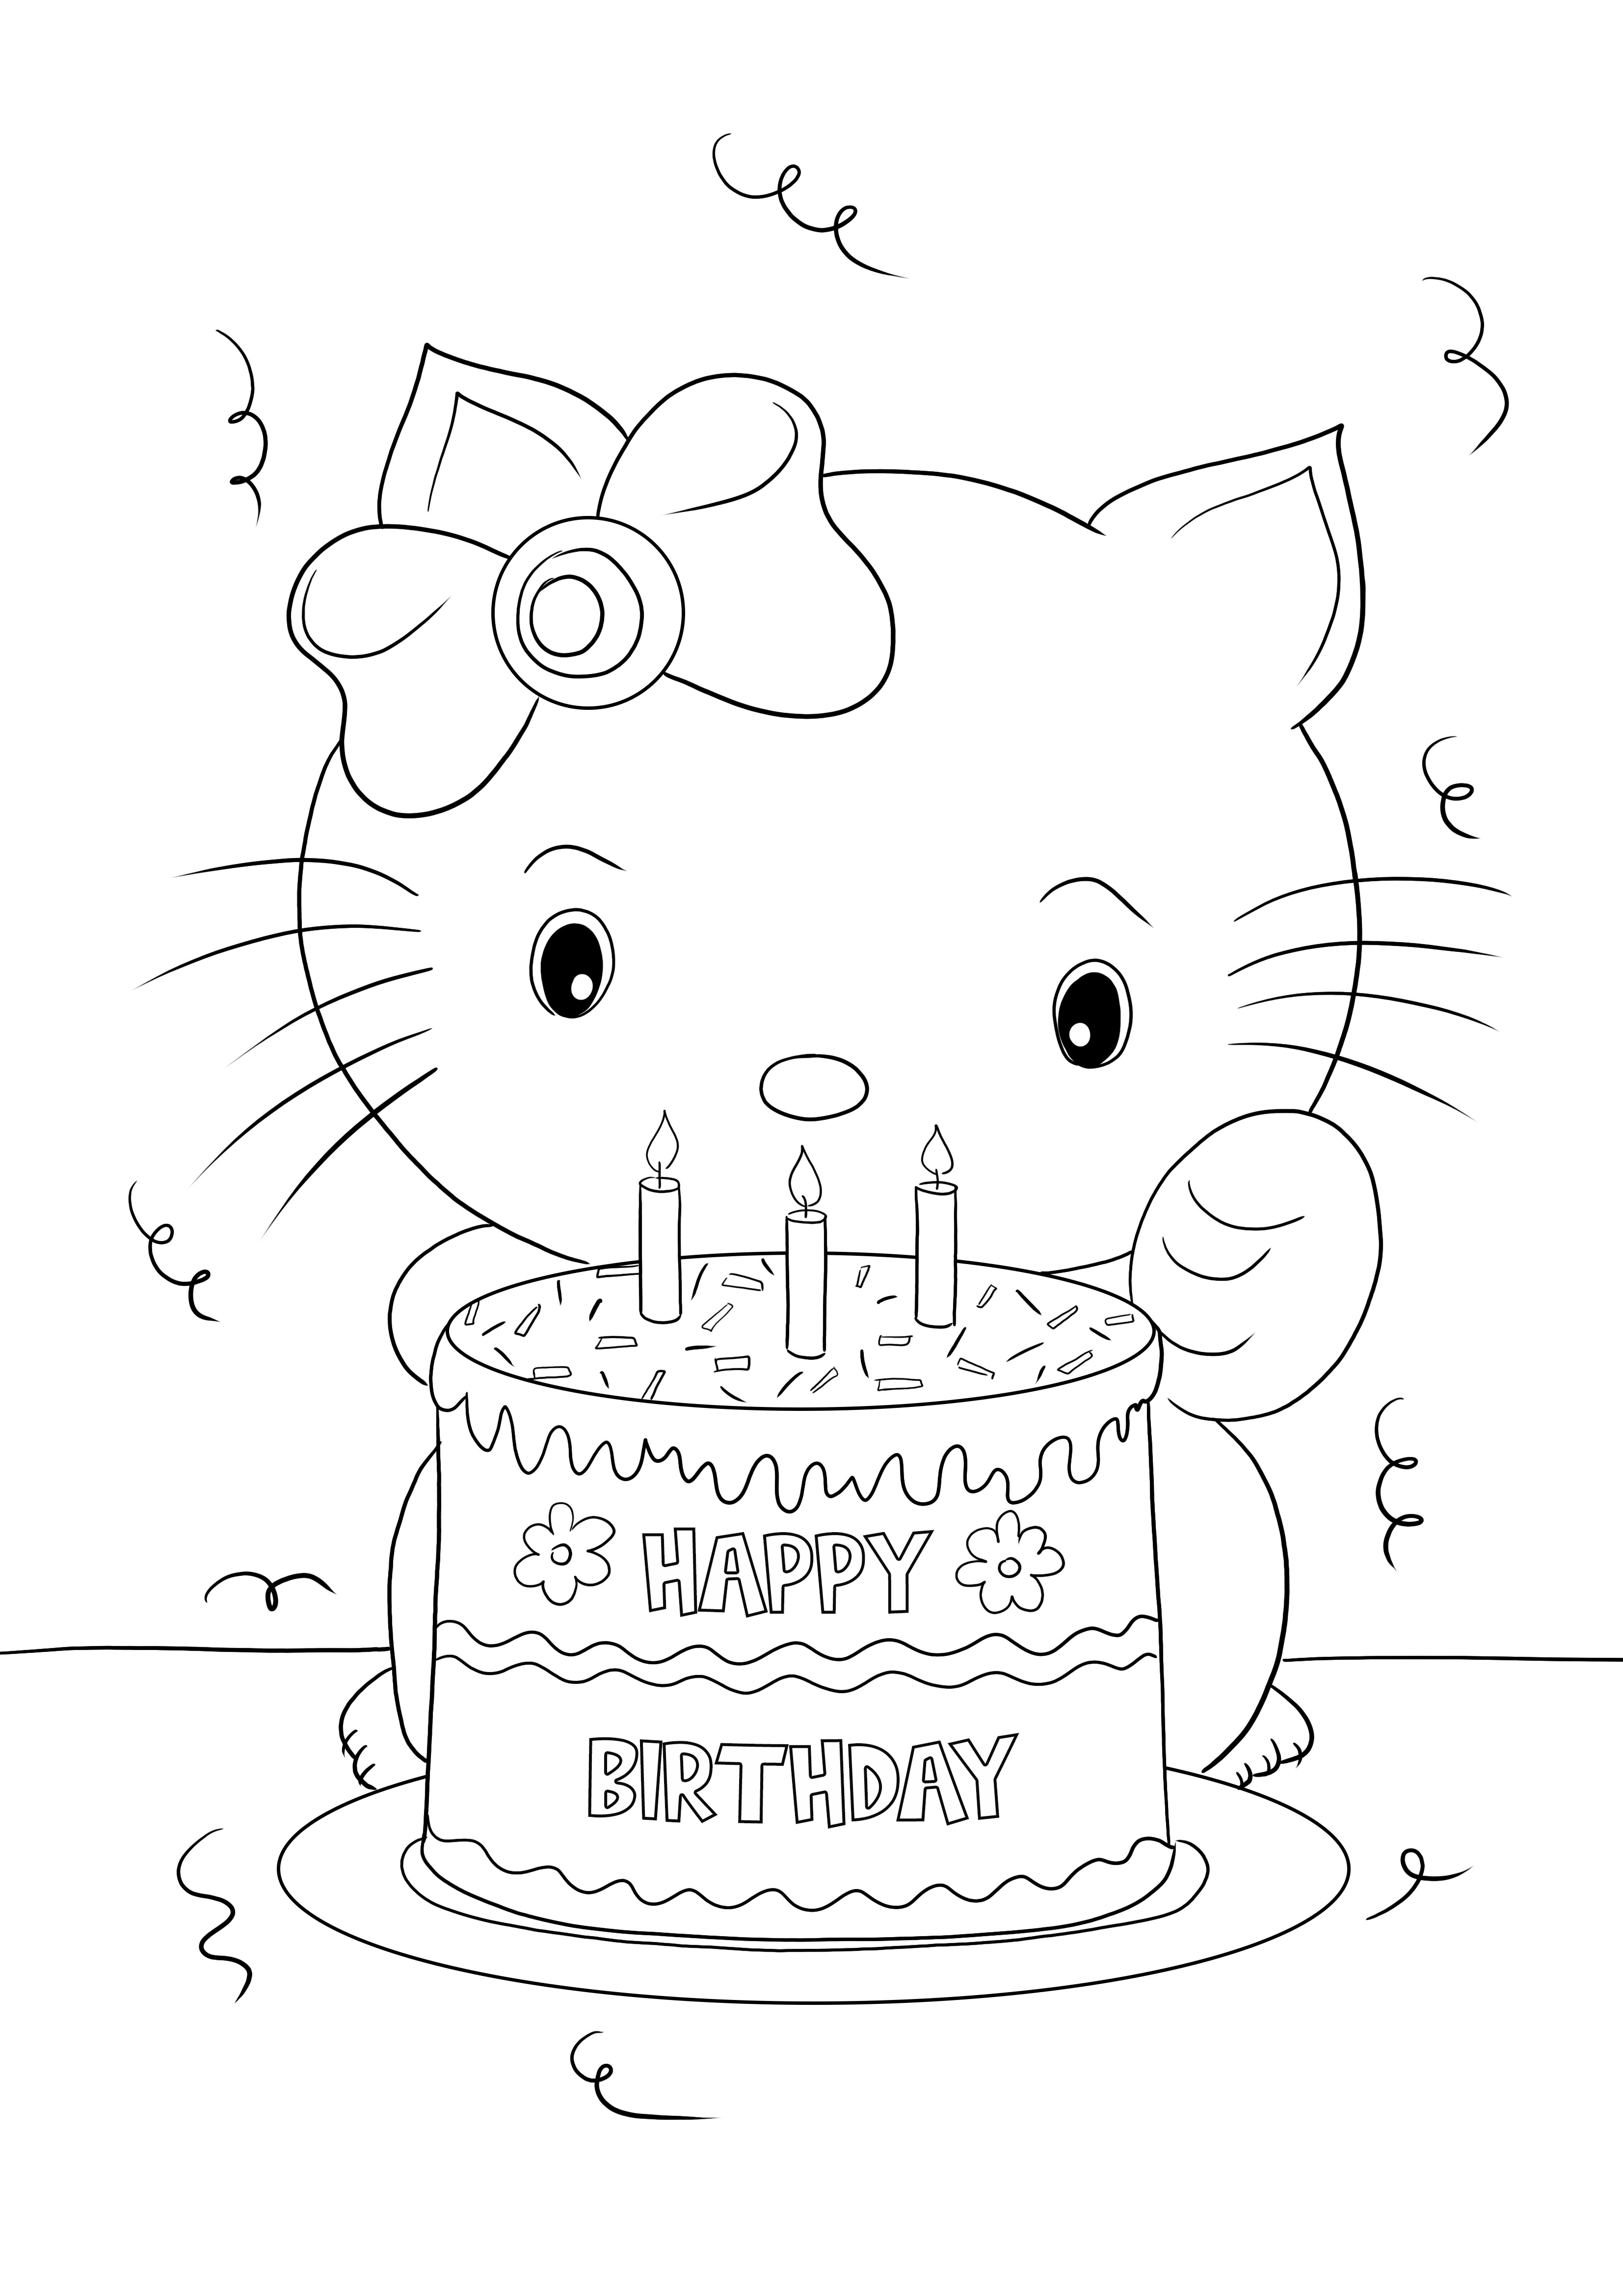 Ilmainen tulostettava Happy Birthday Hello Kitty värittämistä ja hauskaa oppimista varten